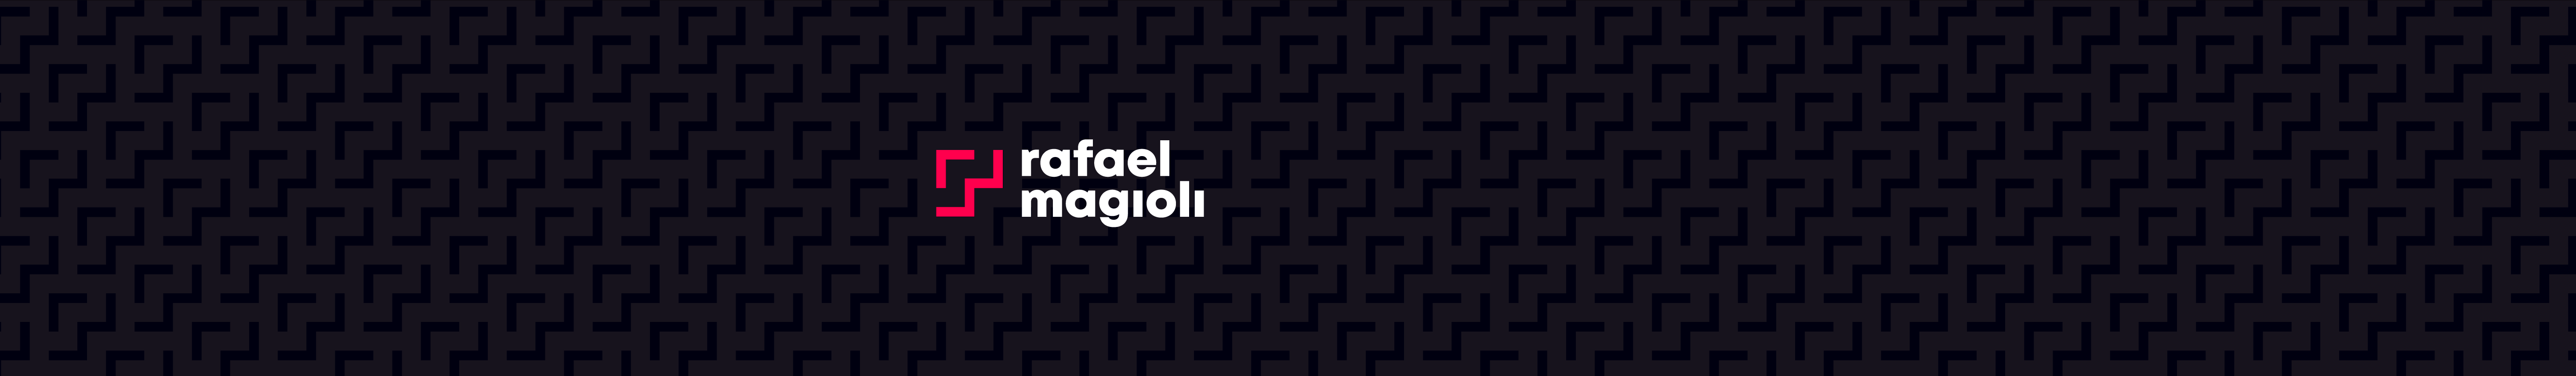 Rafael Magioli's profile banner